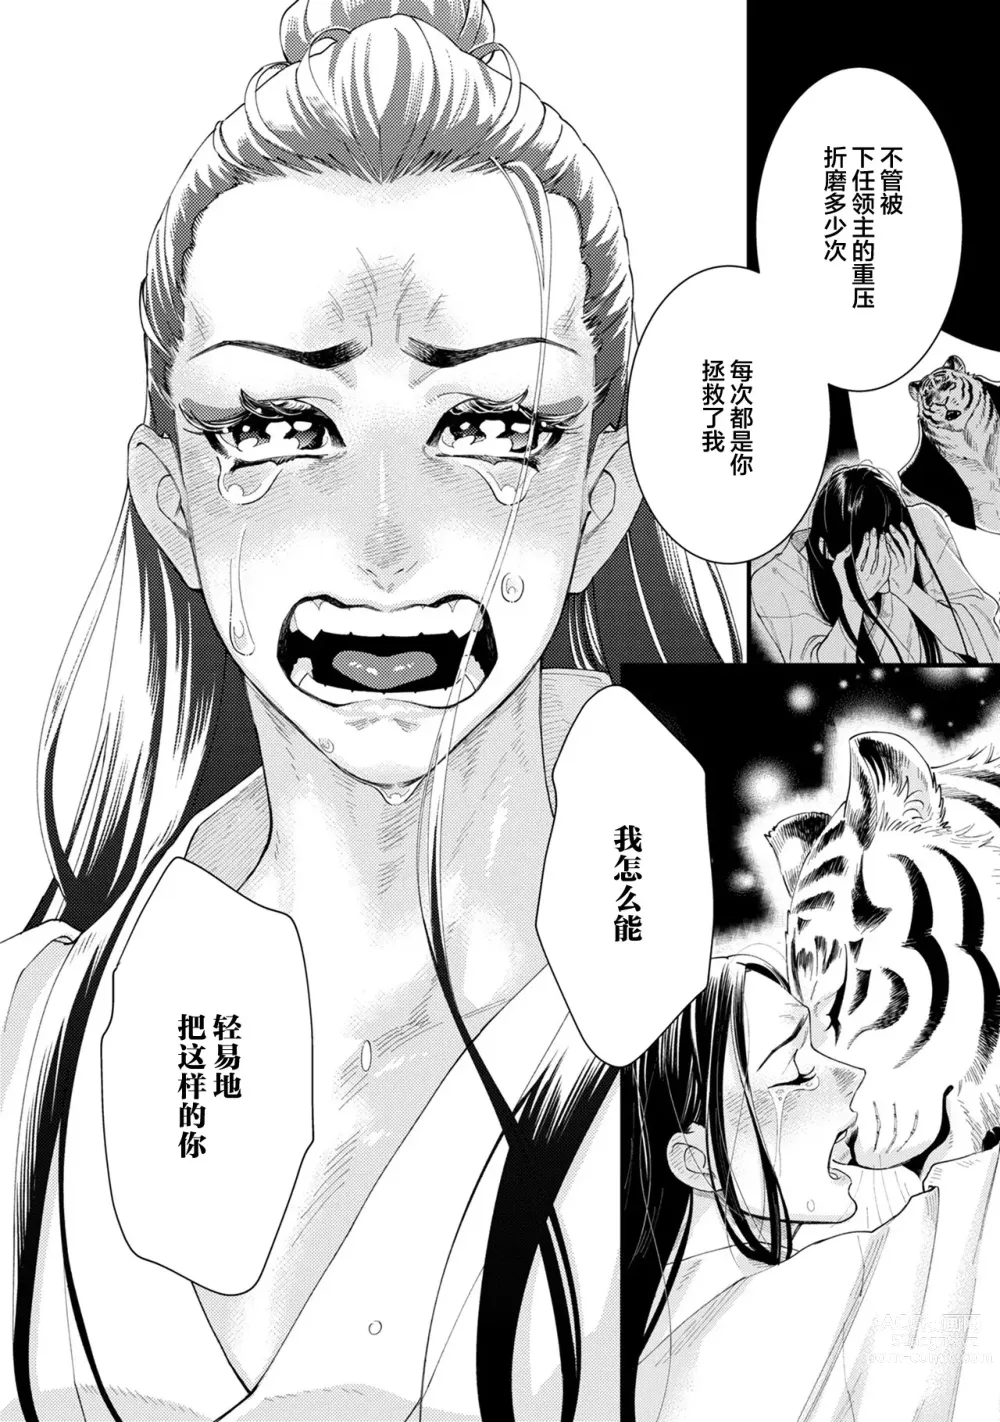 Page 18 of manga JINKO NO HARU